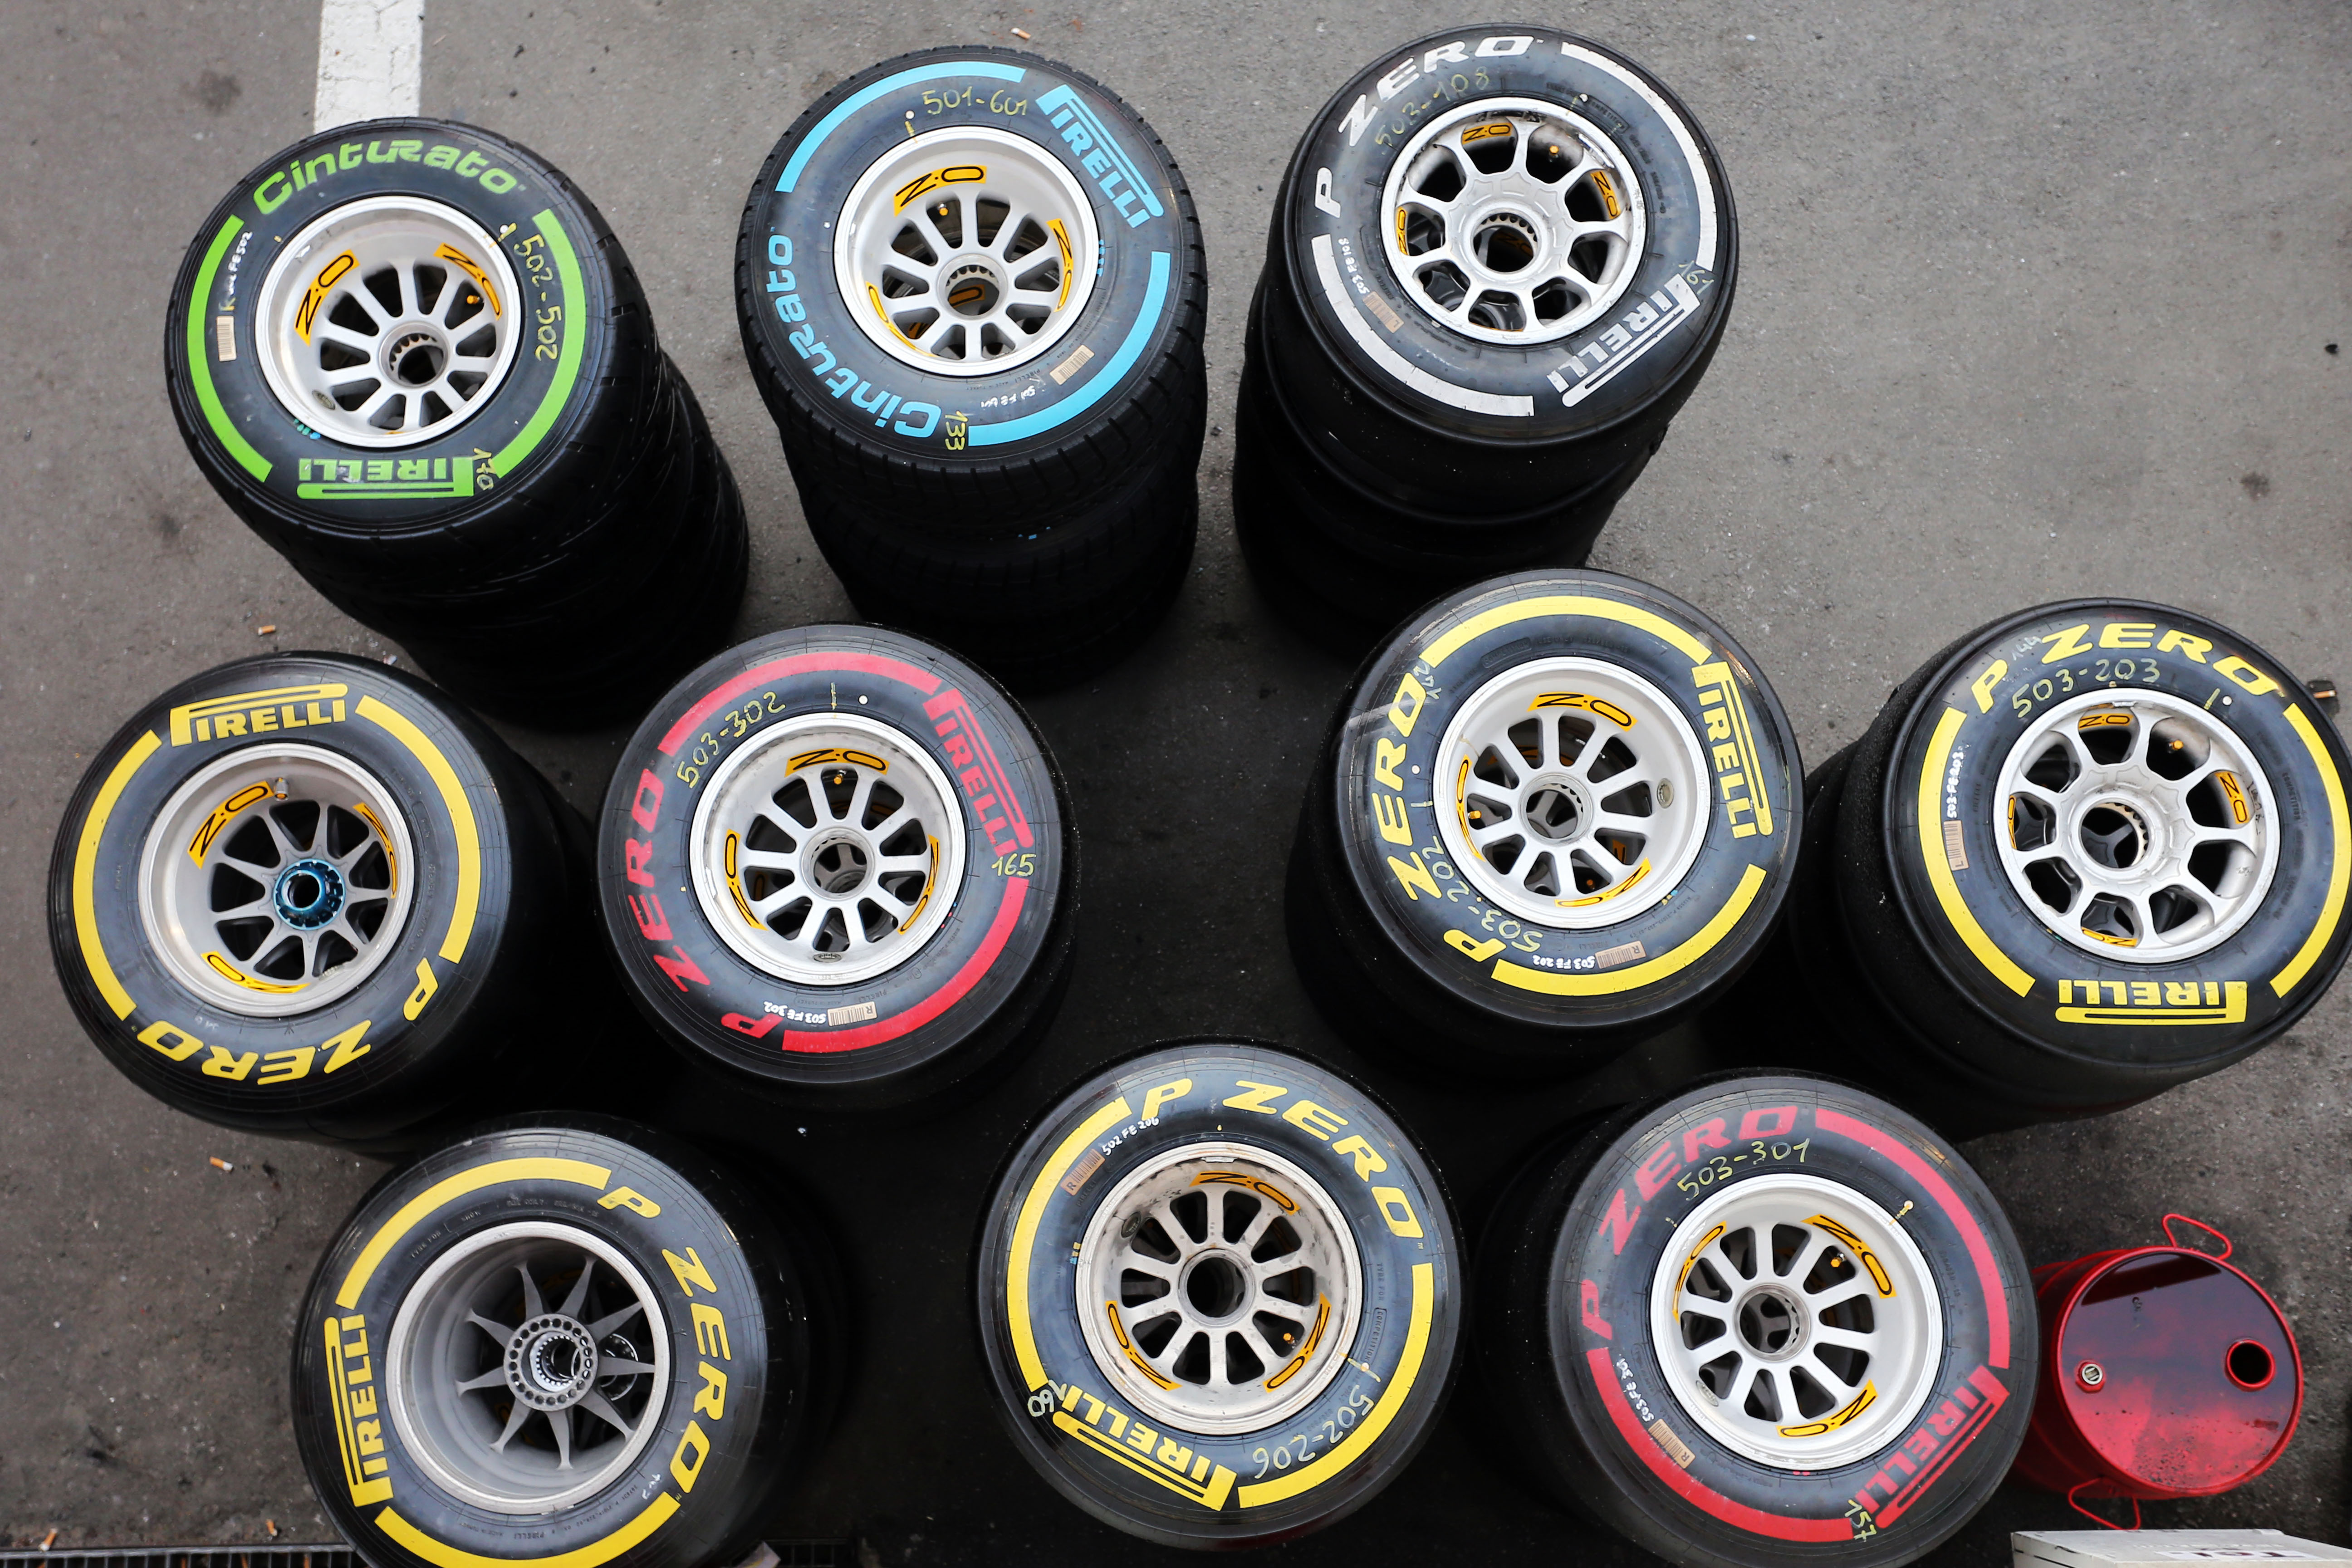 Pirelli maakt selectie voor eerste vier races bekend